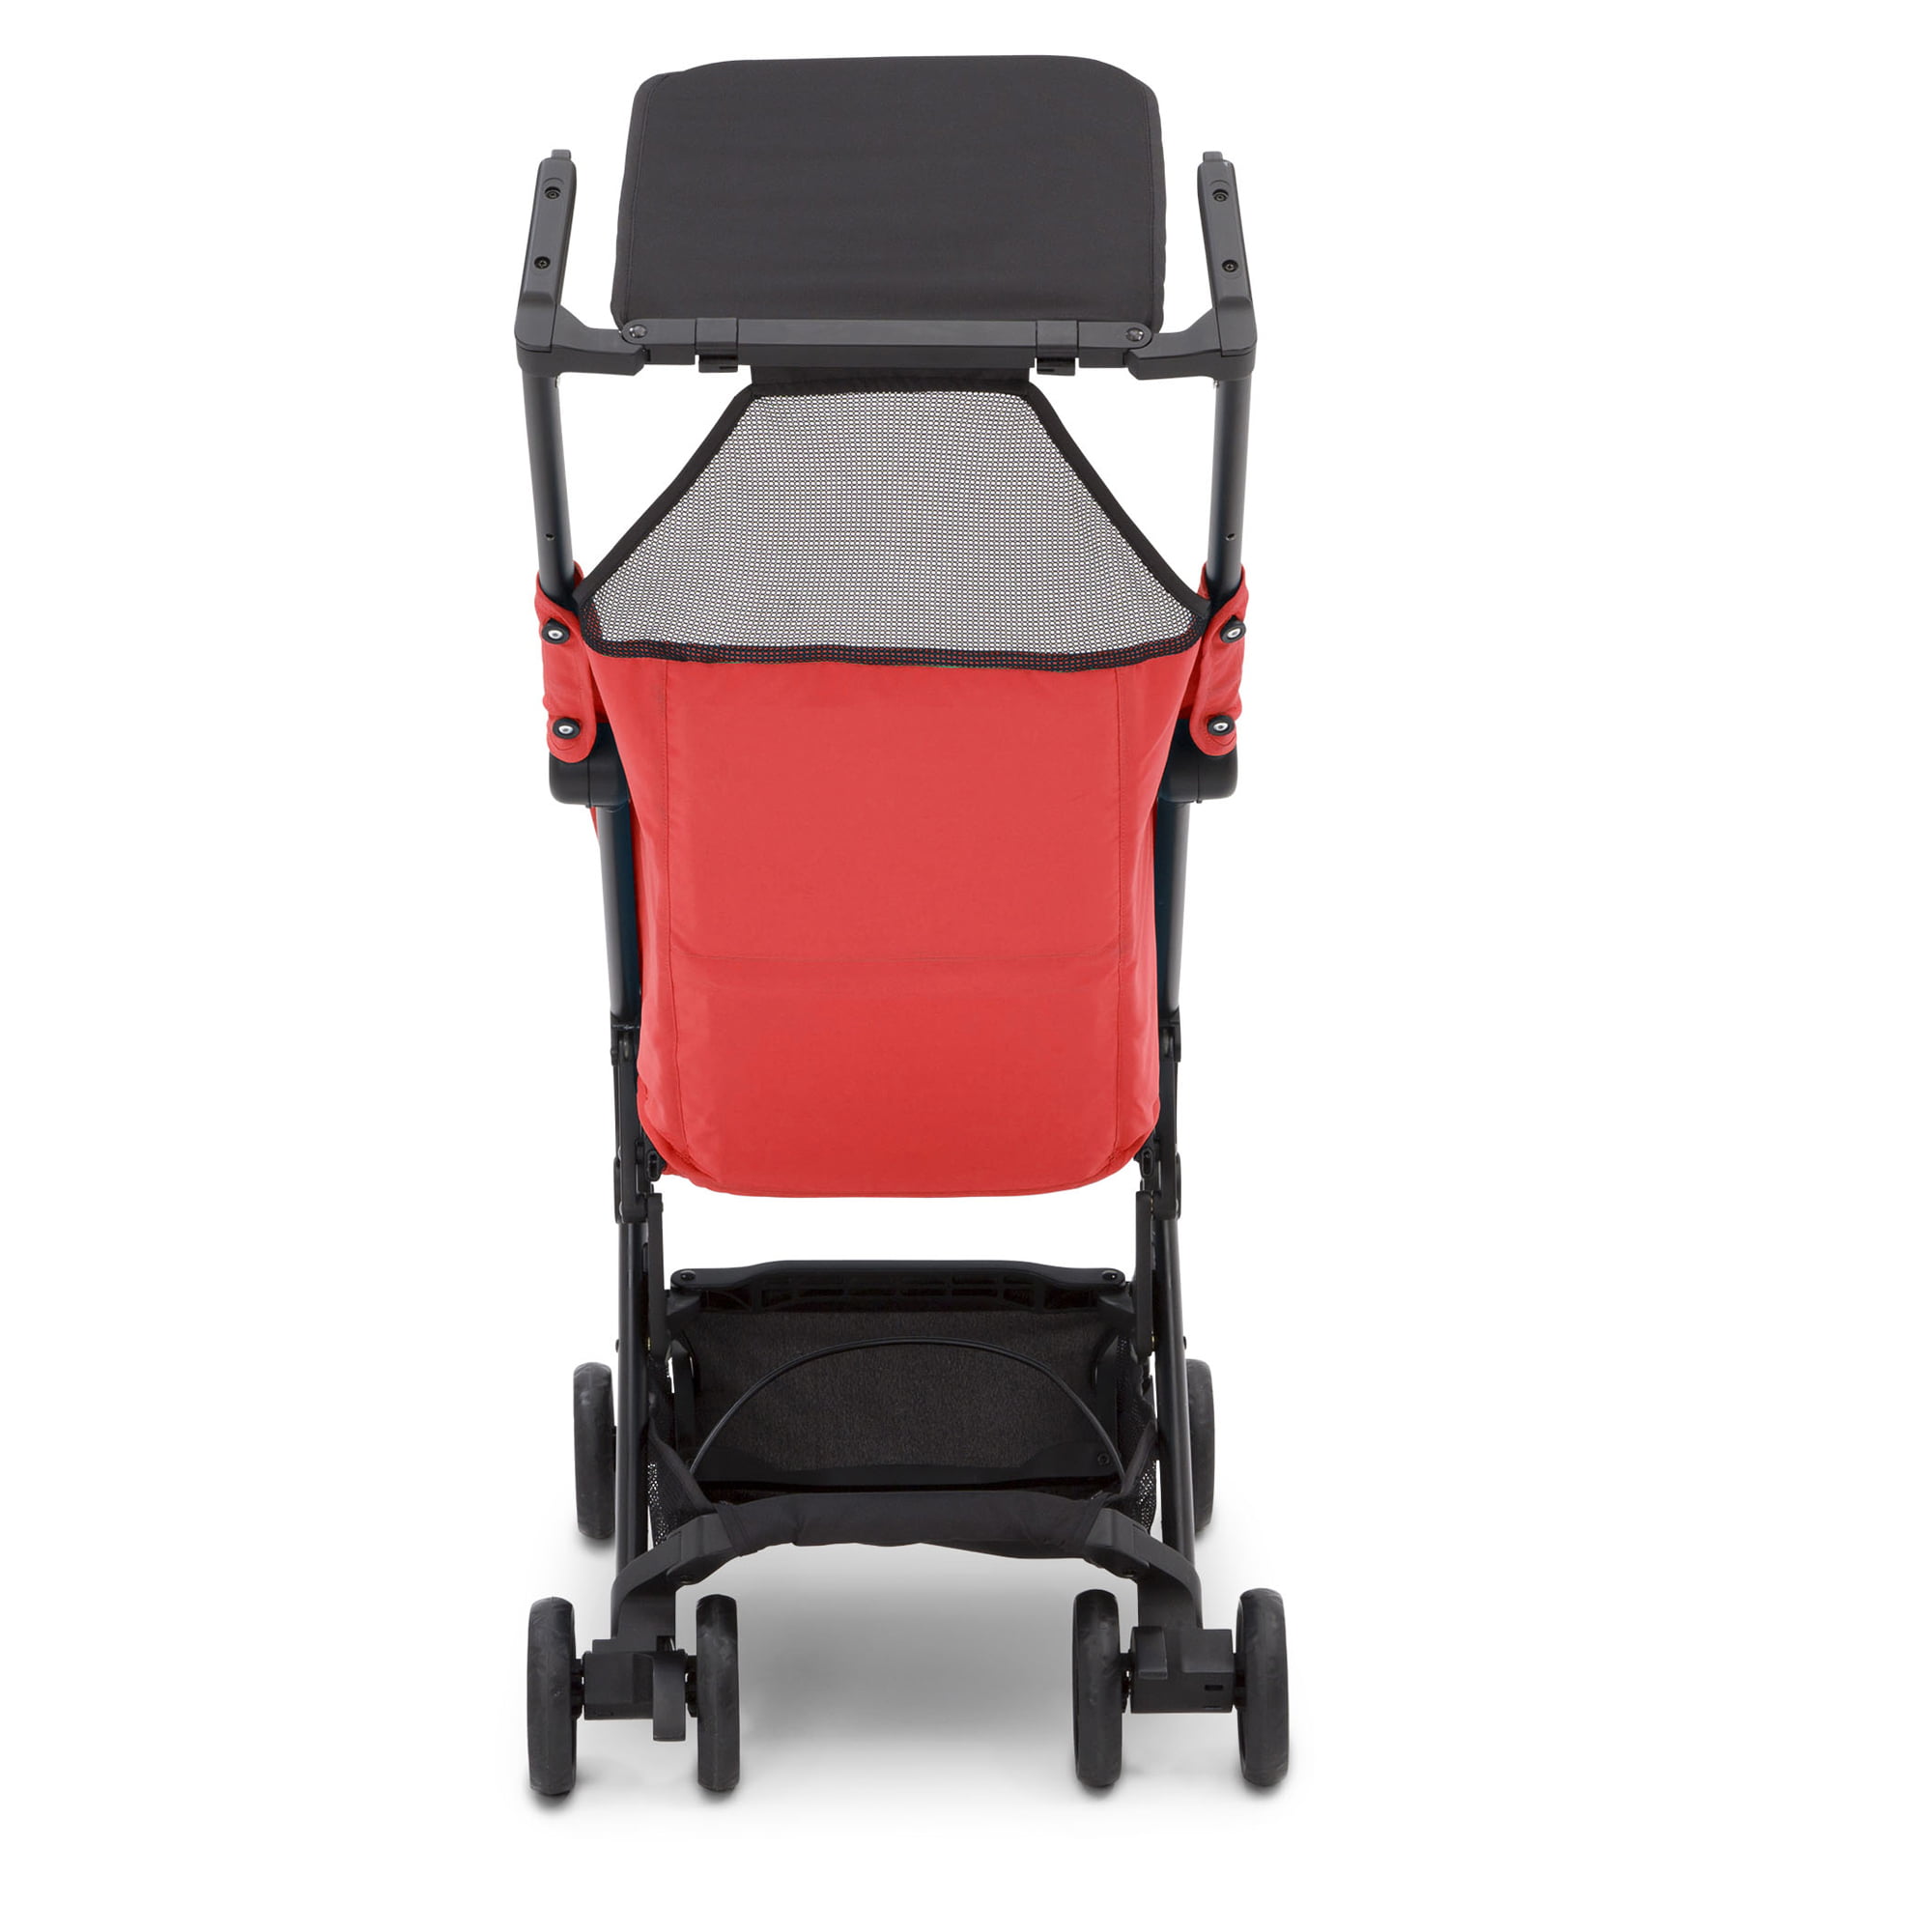 Kinderkraft: PILOT Cabin Size Stroller [up to 15 kg] (Red)